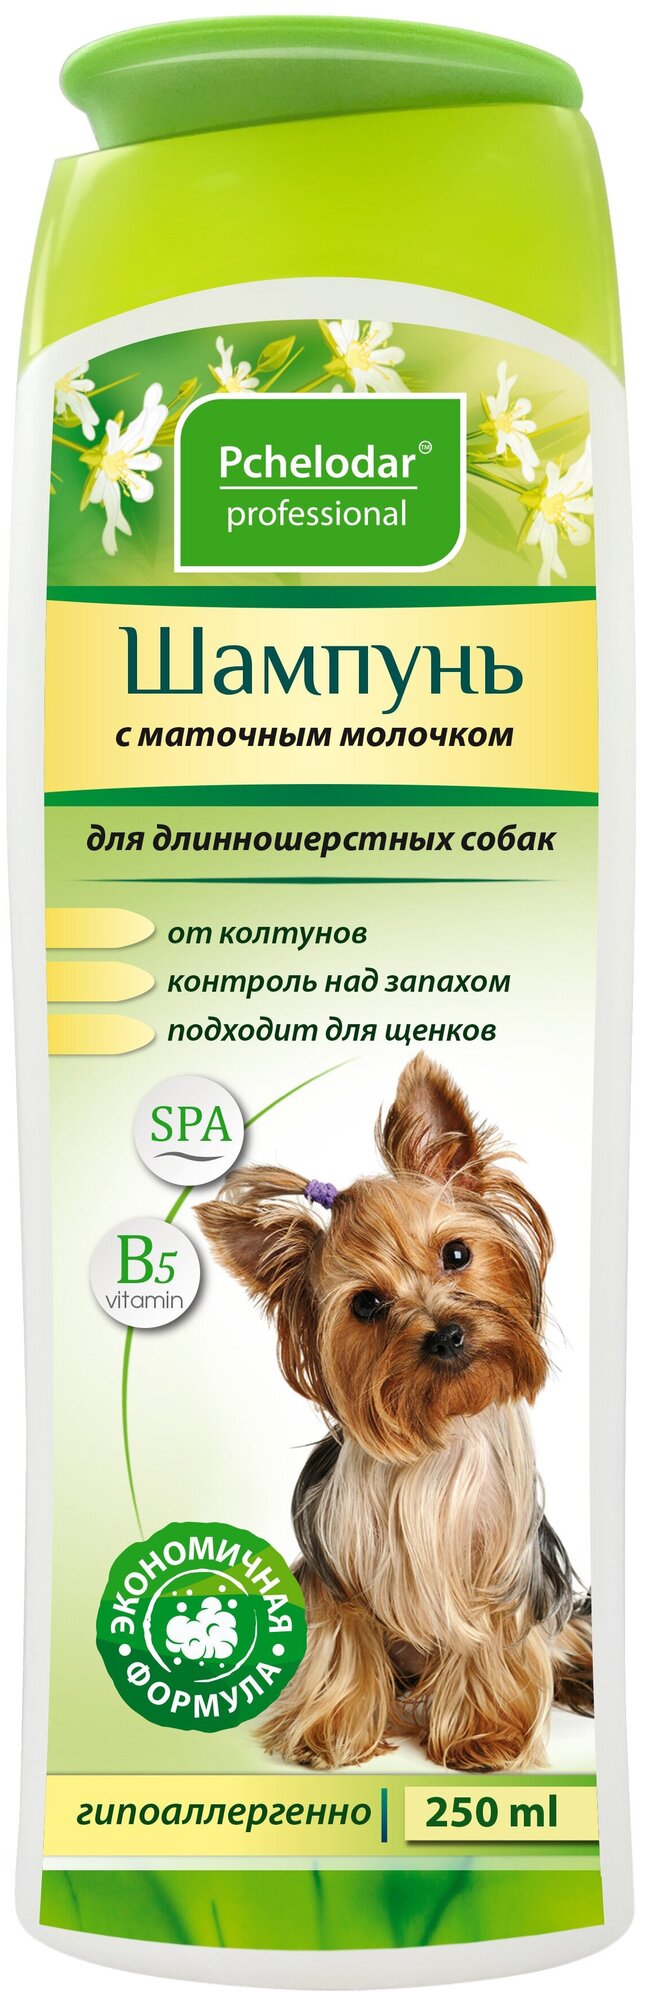 Шампунь Пчелодар с маточным молочком для длинношерстных собак — купить в интернет-магазине по низкой цене на Яндекс Маркете